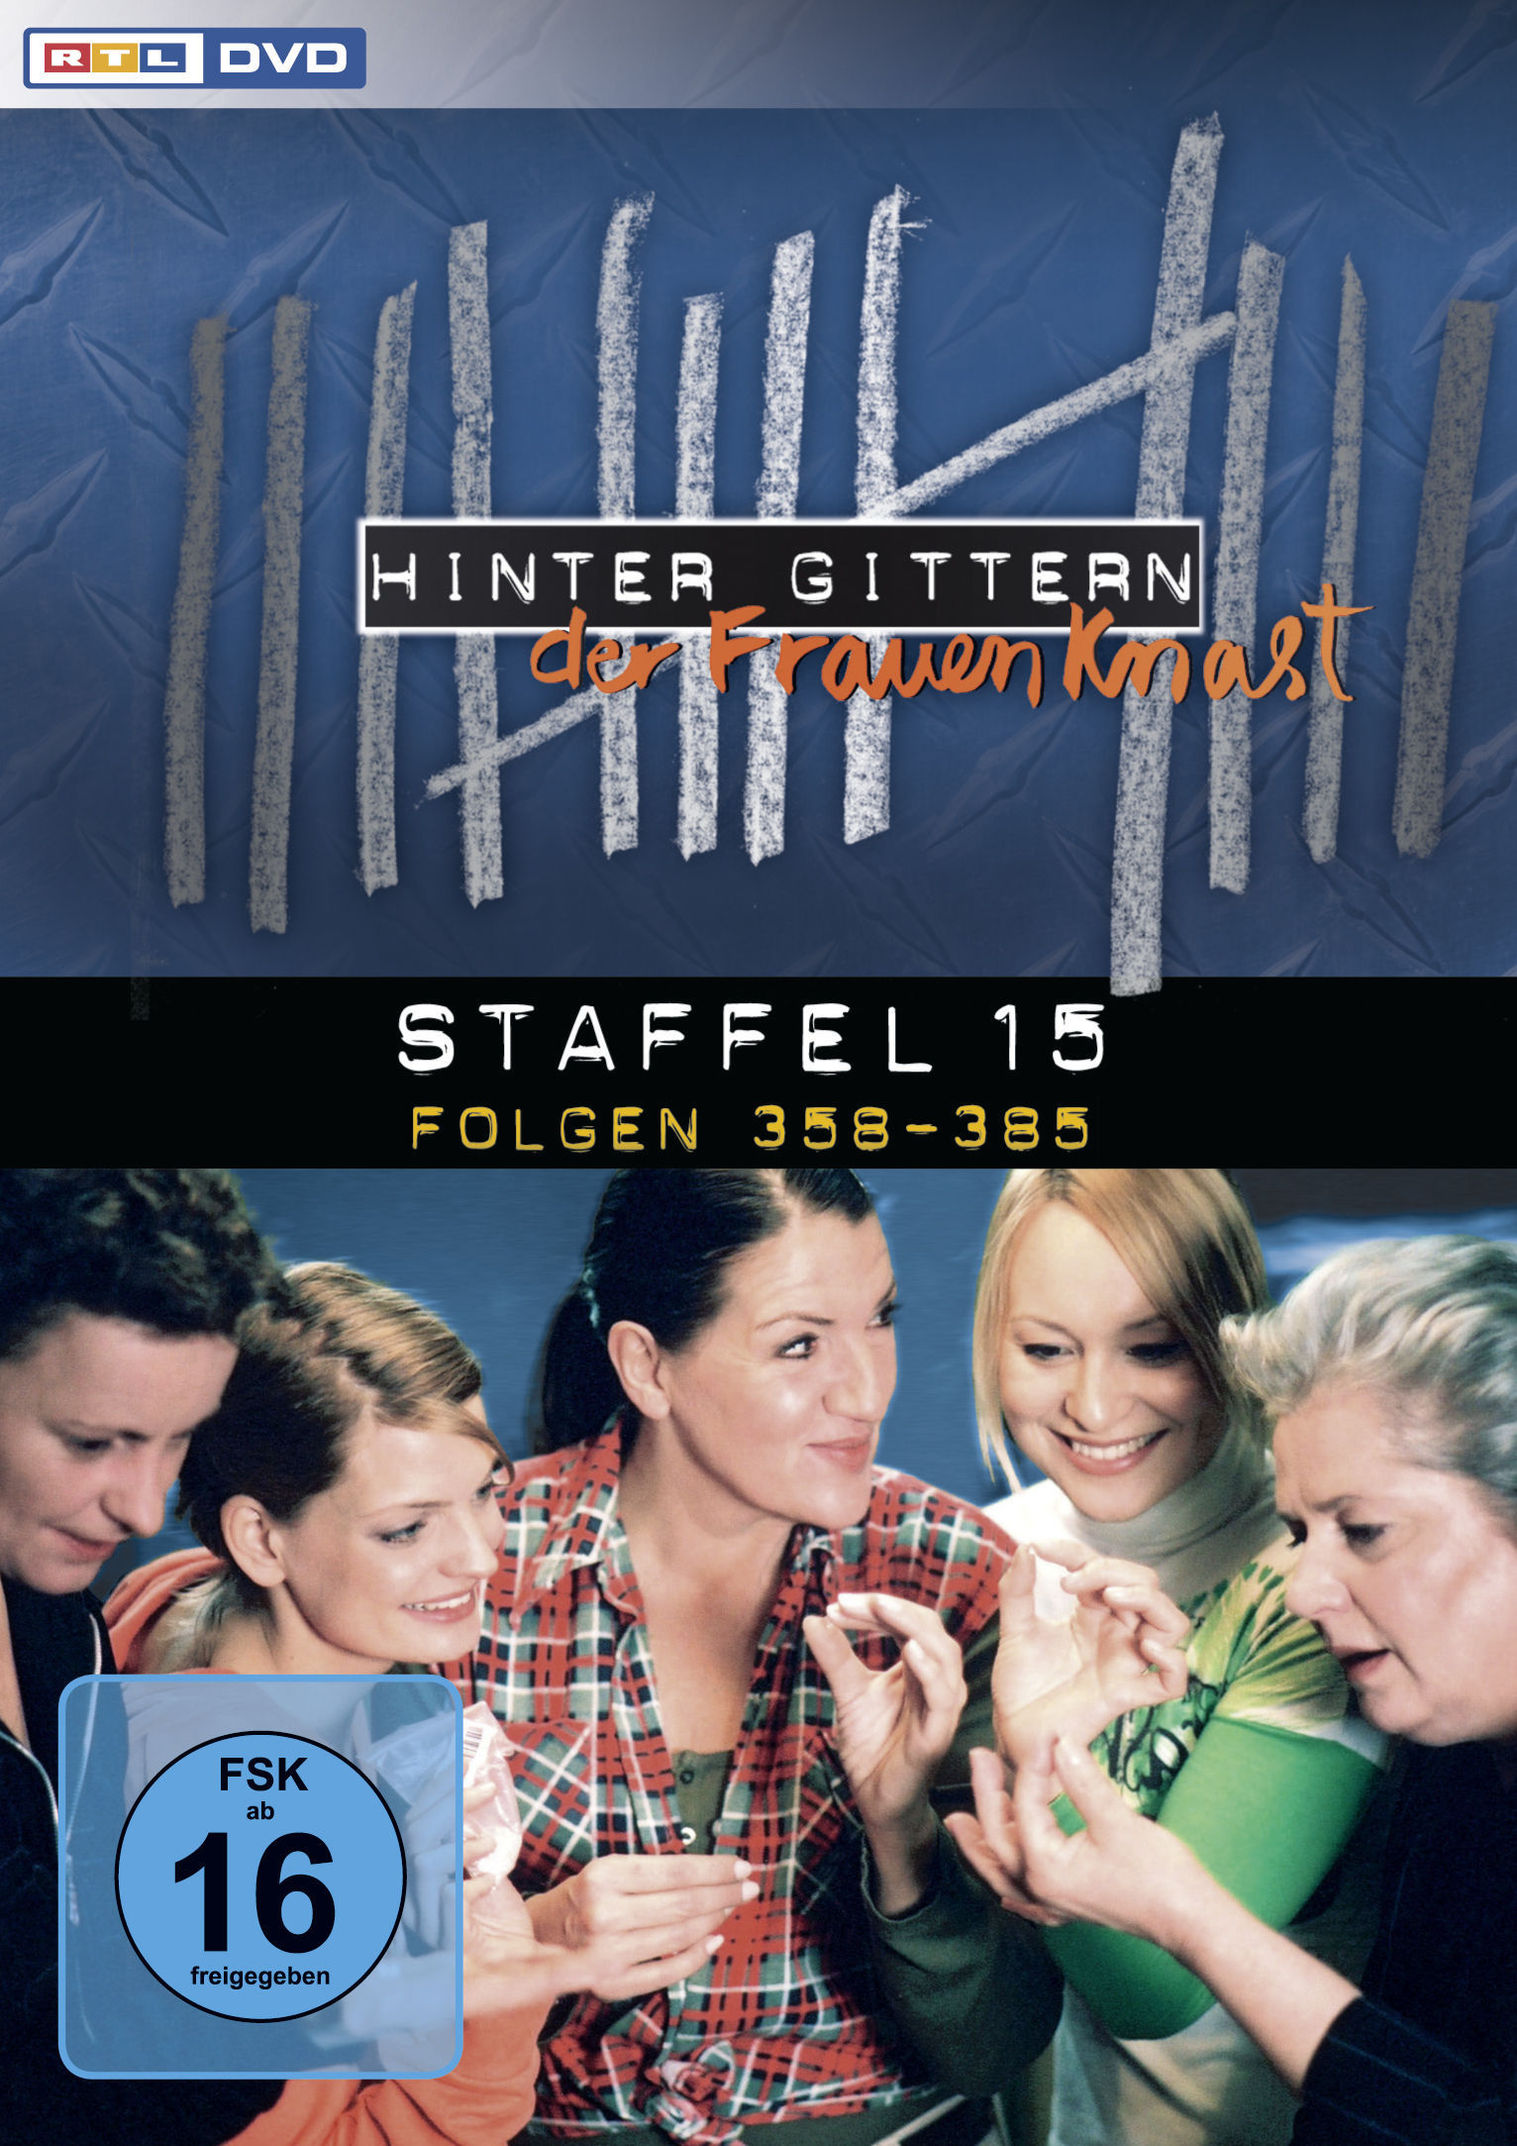 Hinter Gittern: Der Frauenknast - Staffel 15 DVD | Weltbild.de